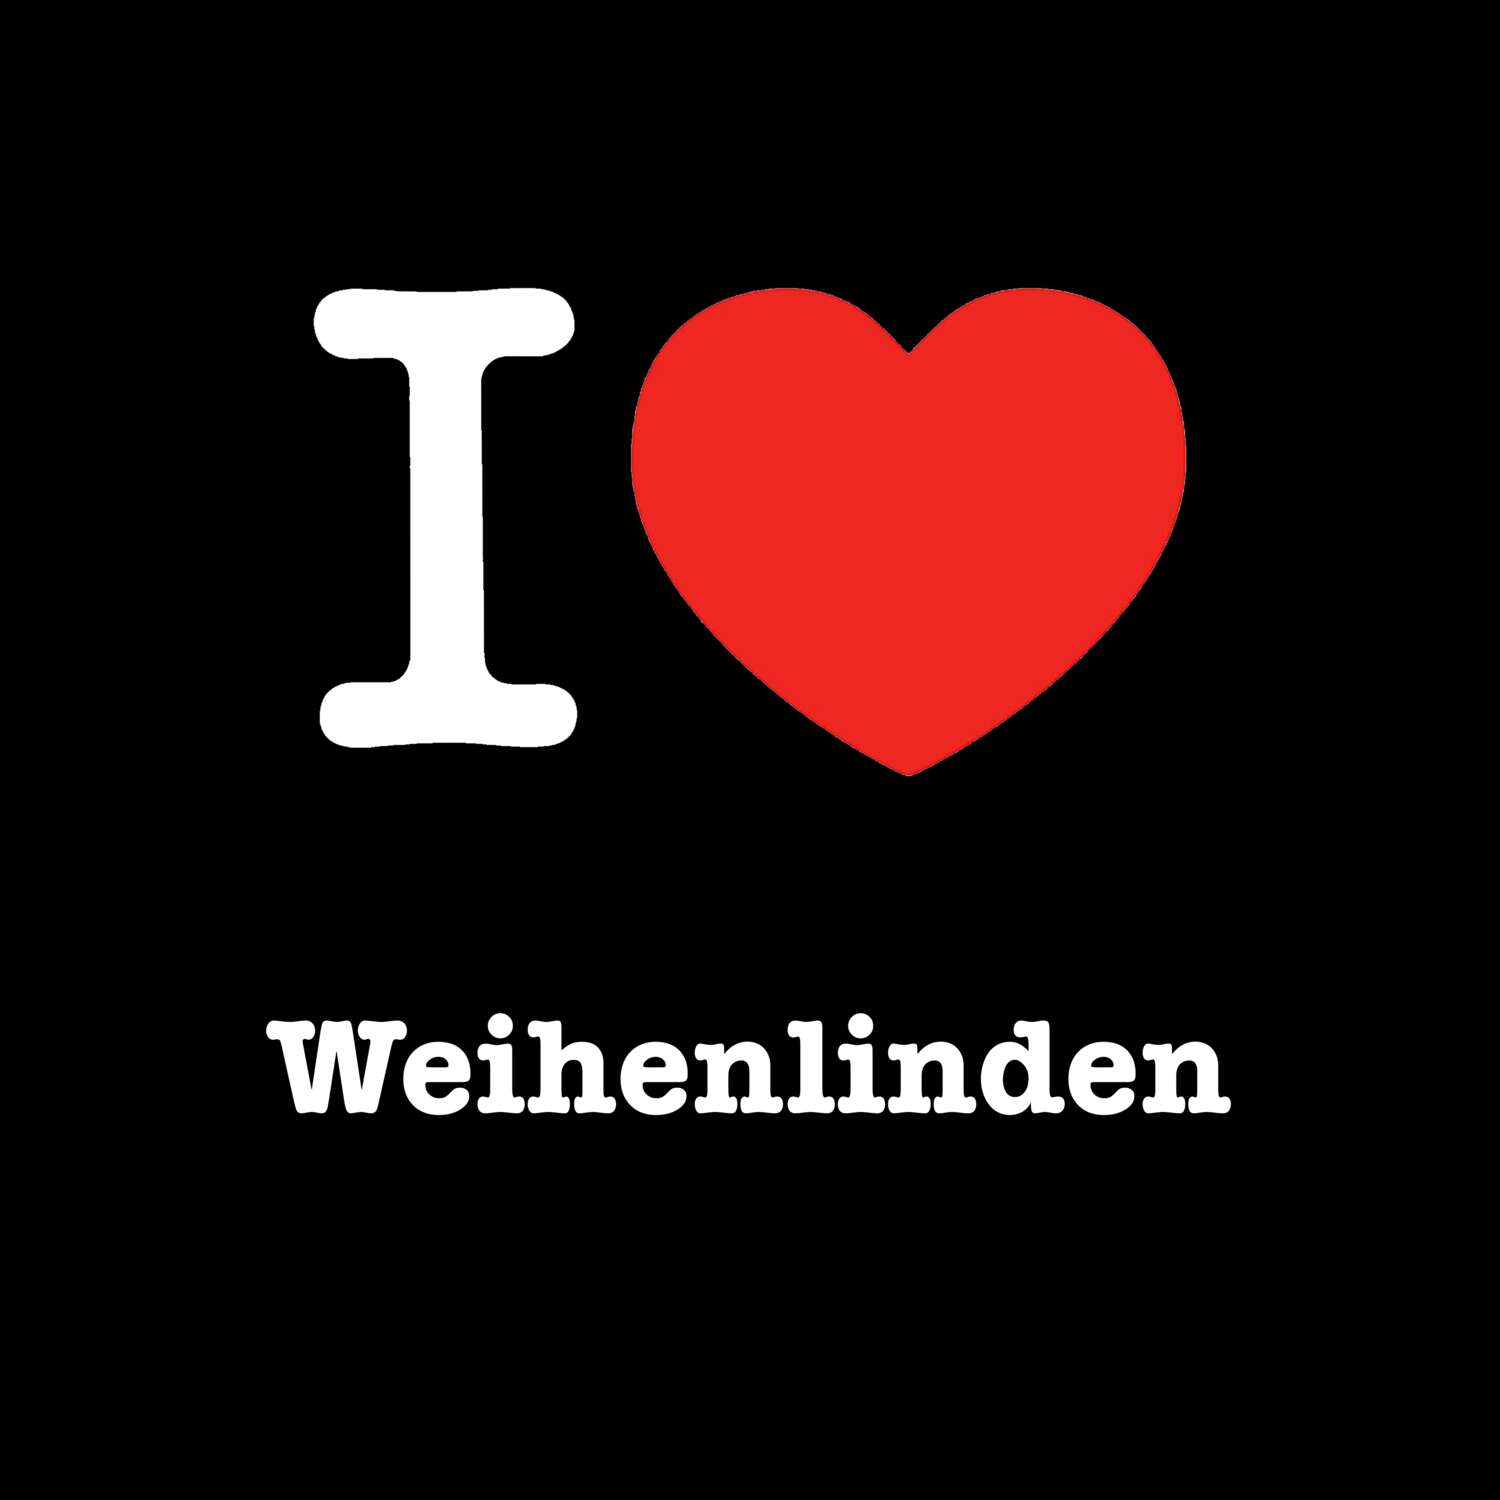 Weihenlinden T-Shirt »I love«